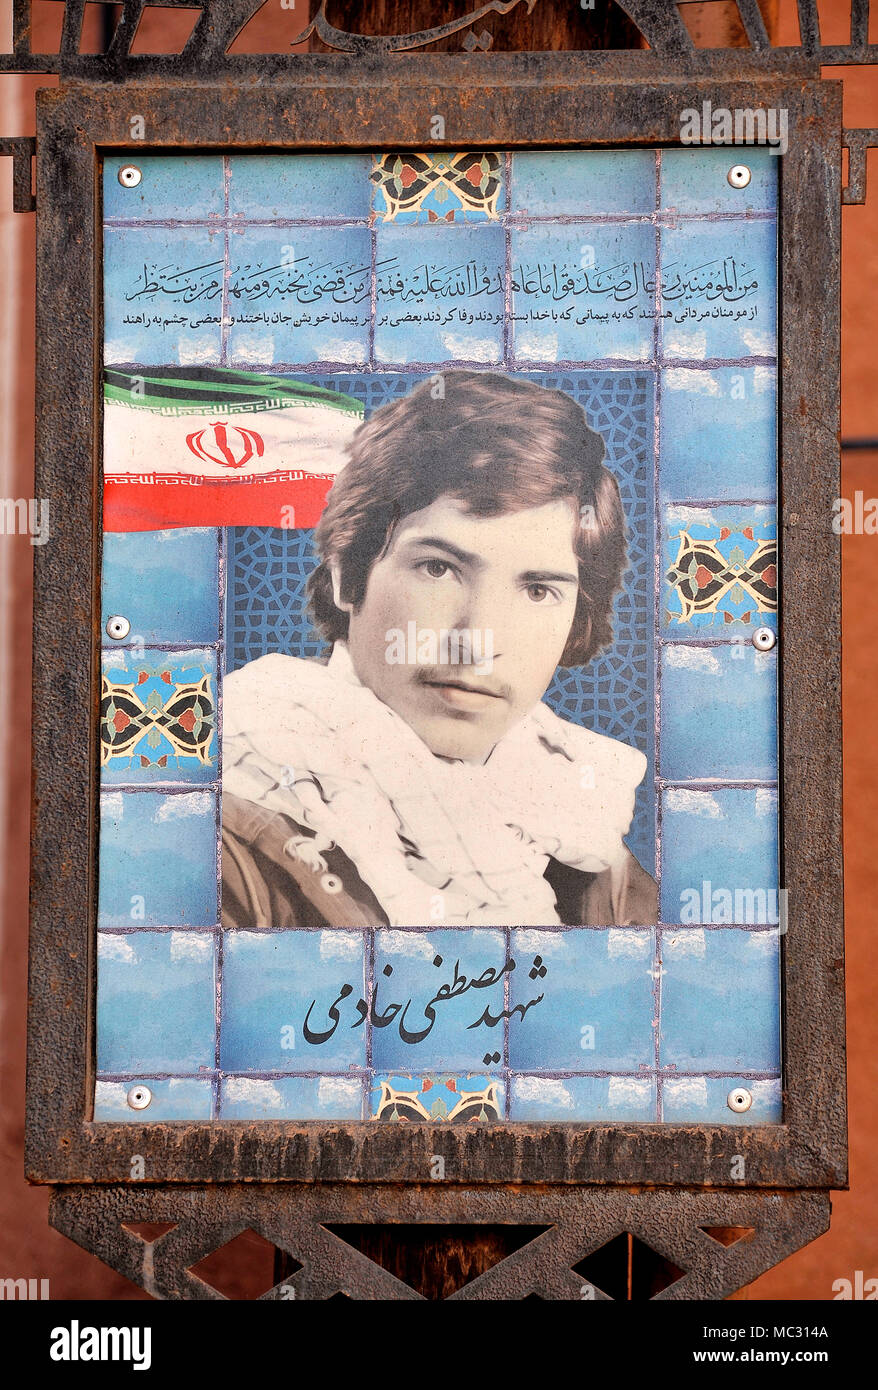 Am Straßenrand Denkmal für einen Märtyrer aus dem Iran Irak Krieg in Abyaneh, Iran Stockfoto